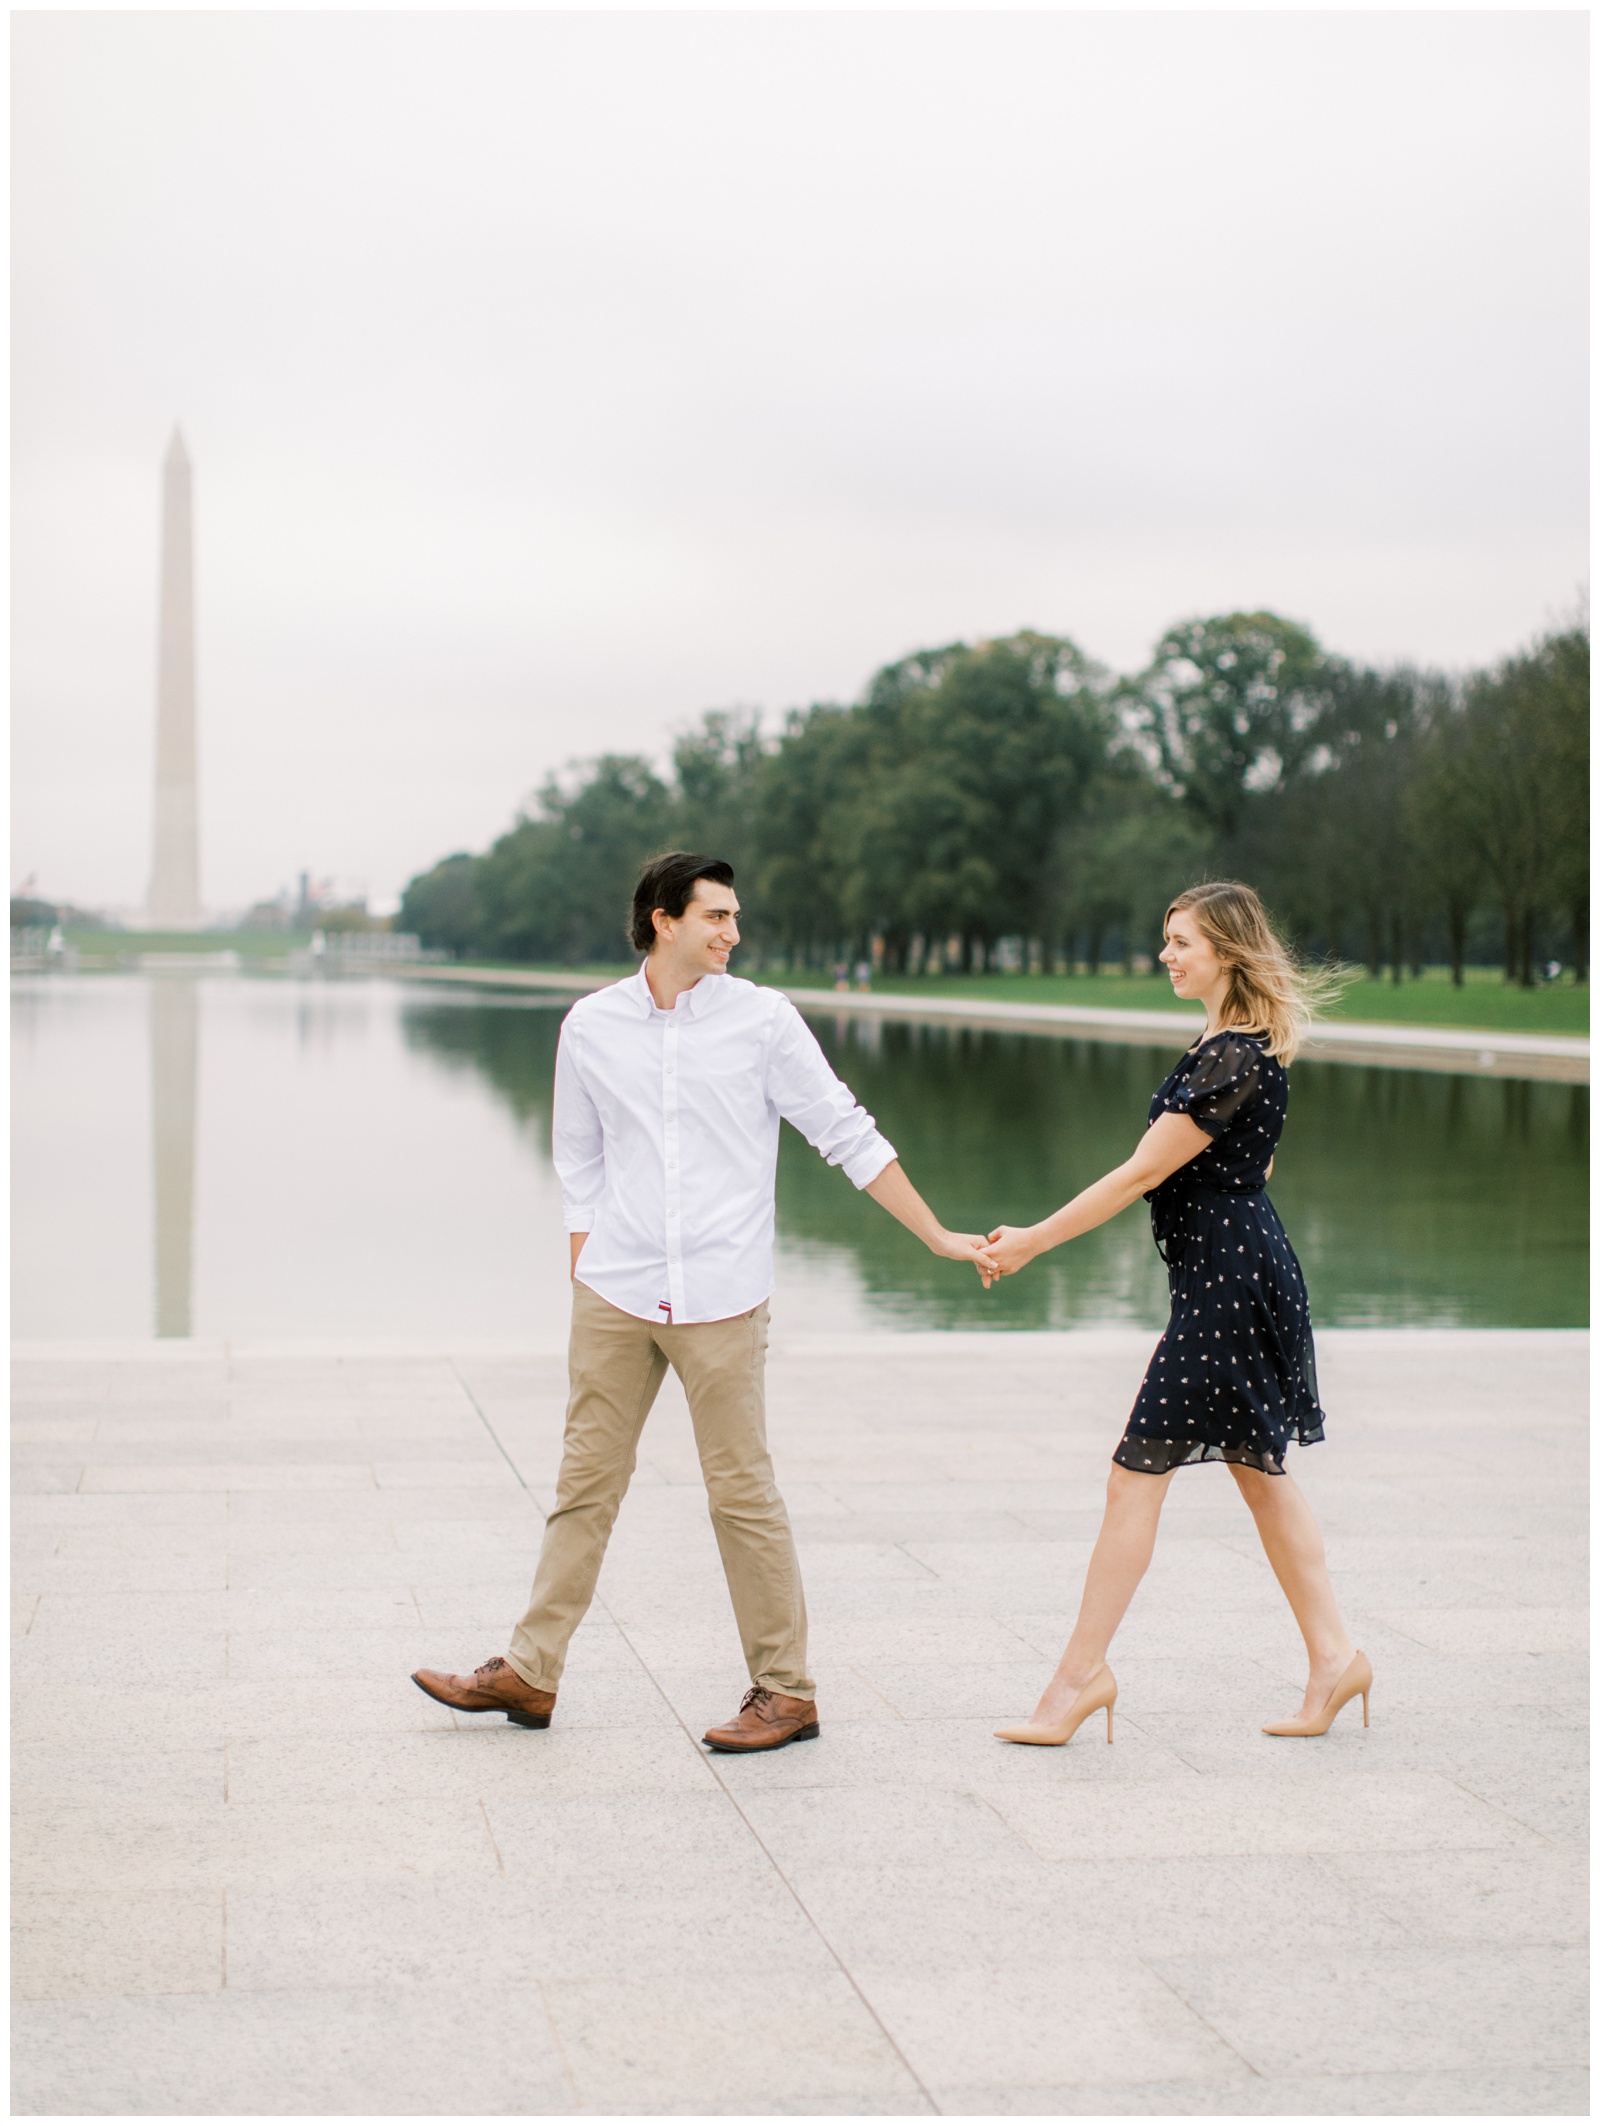 National Mall Engagement Session - Washington, DC Engagement Photographer - Neva Sullivan Photography_0019.jpg